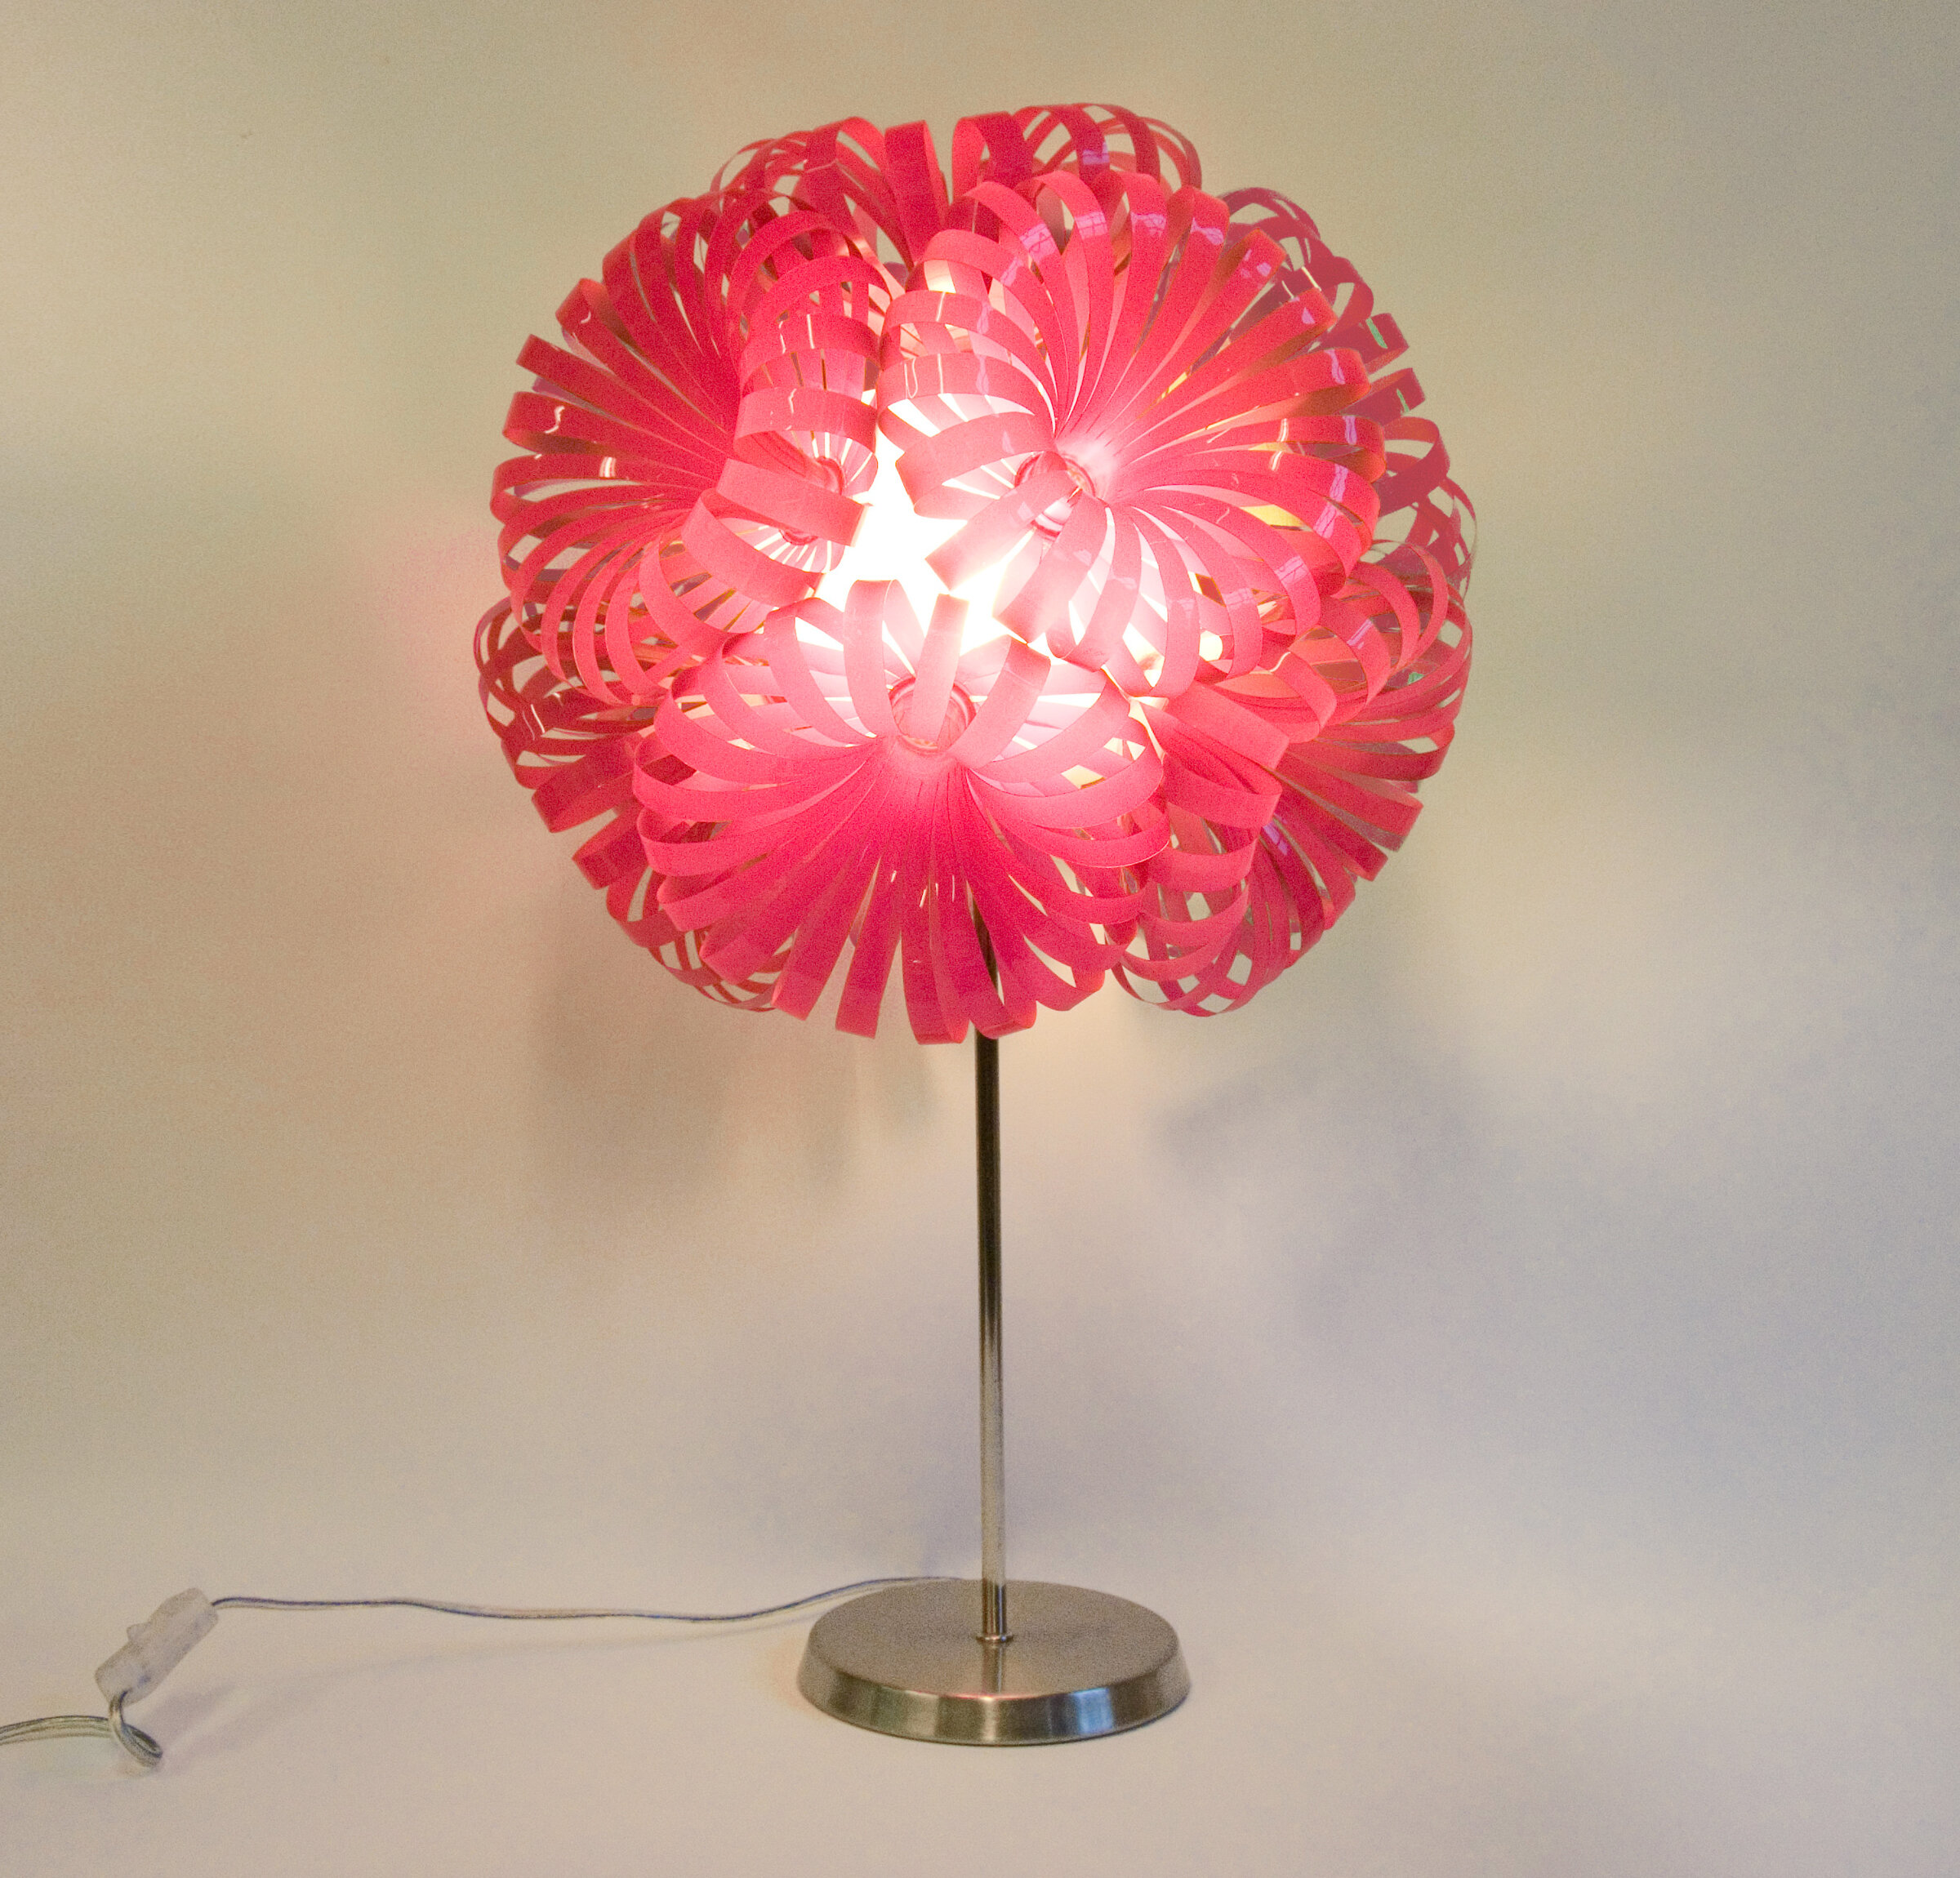 Repurposed pink lamp using an energy saving bulb